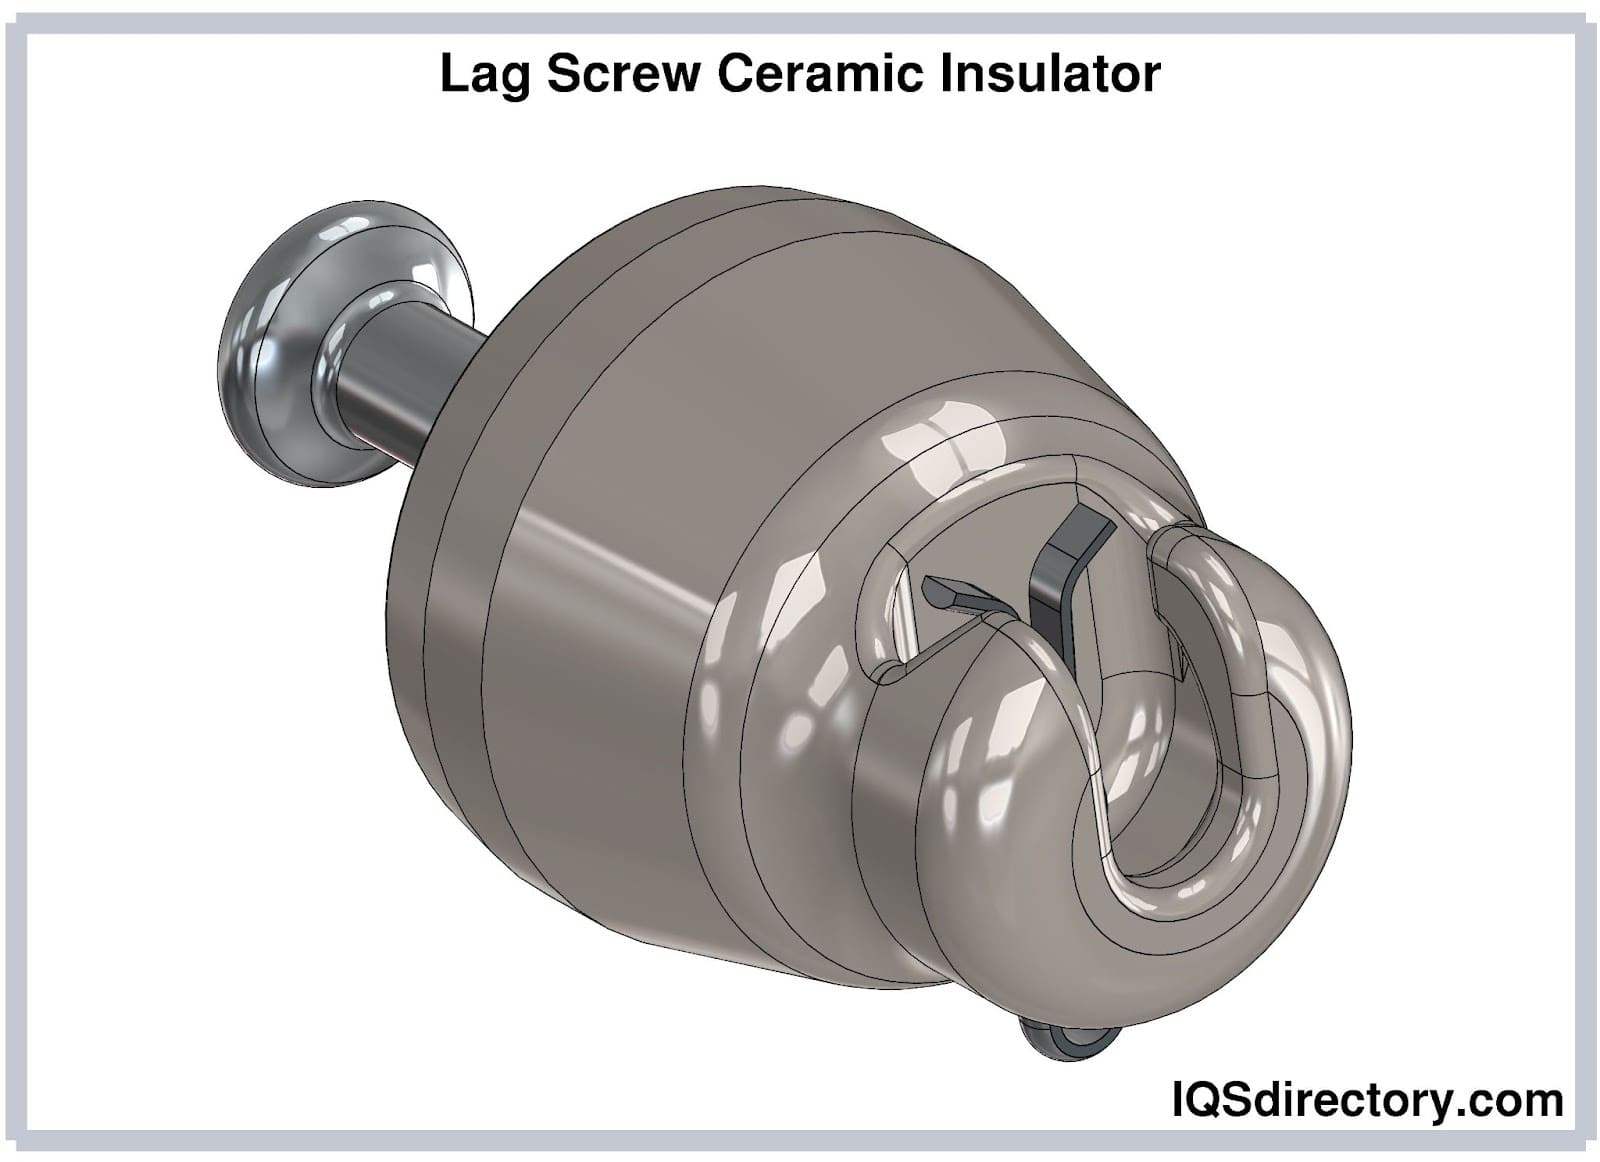 Lag Screw Ceramic Insulator